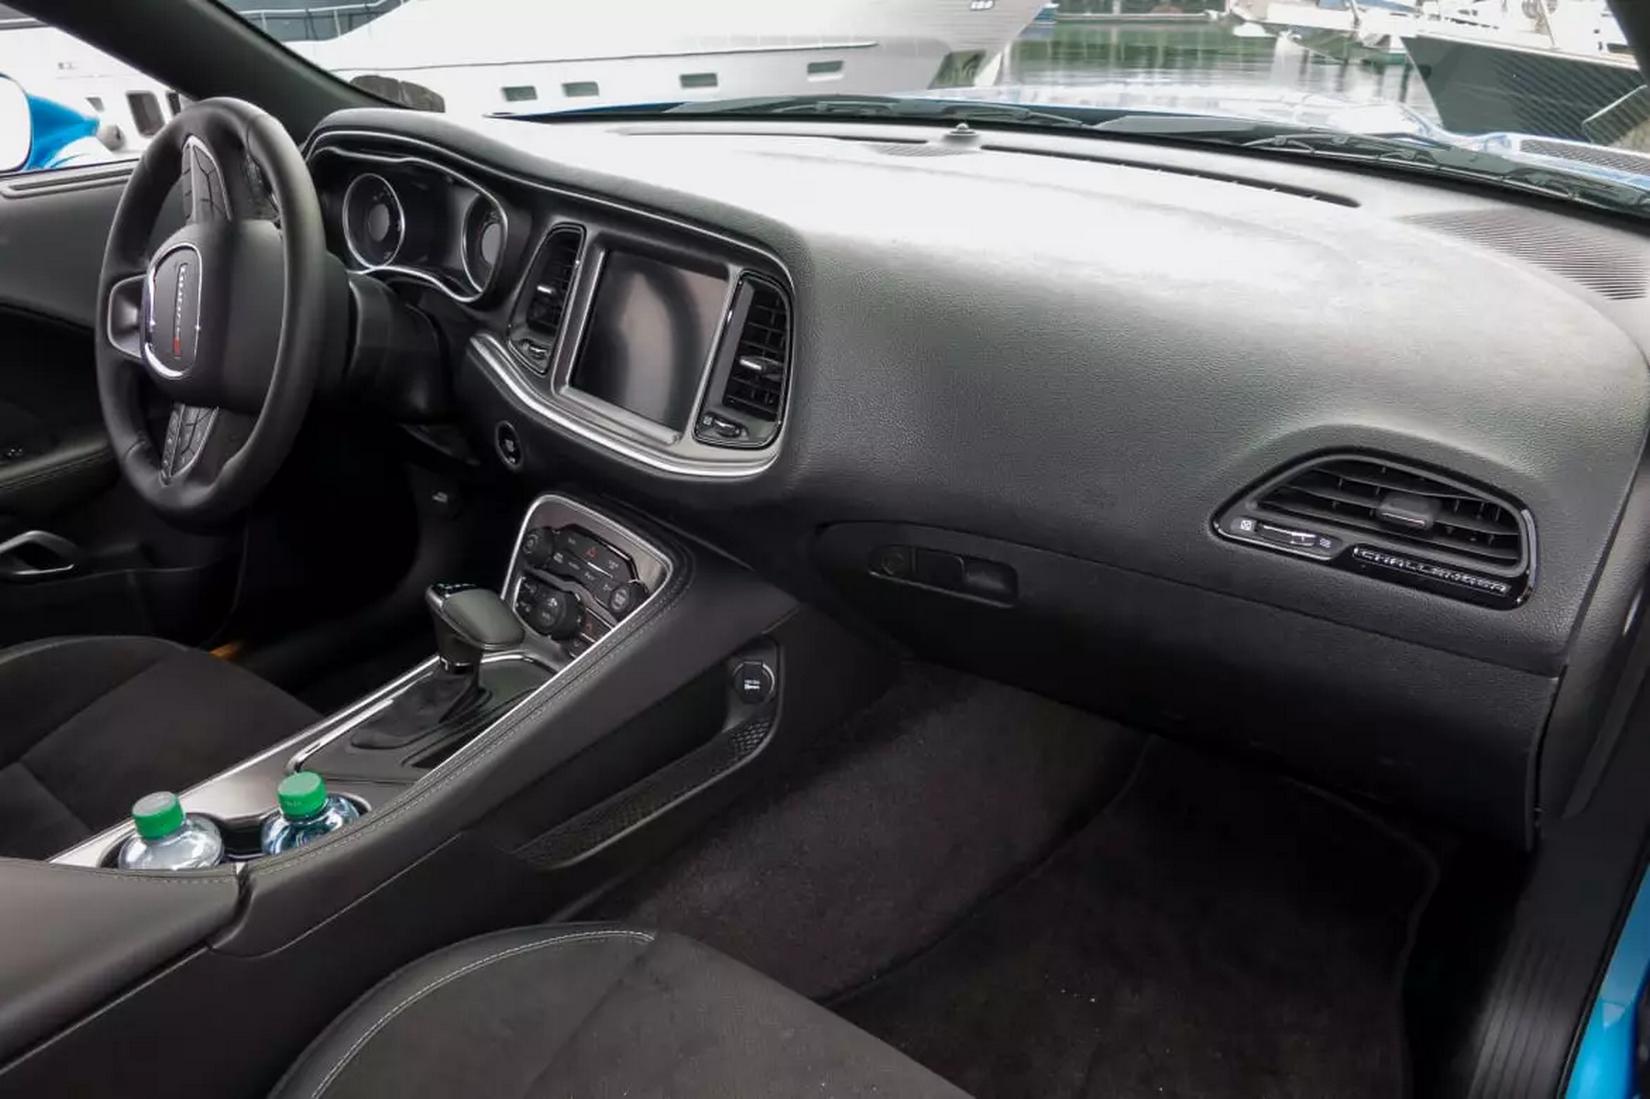 2019 Dodge Challenger interior